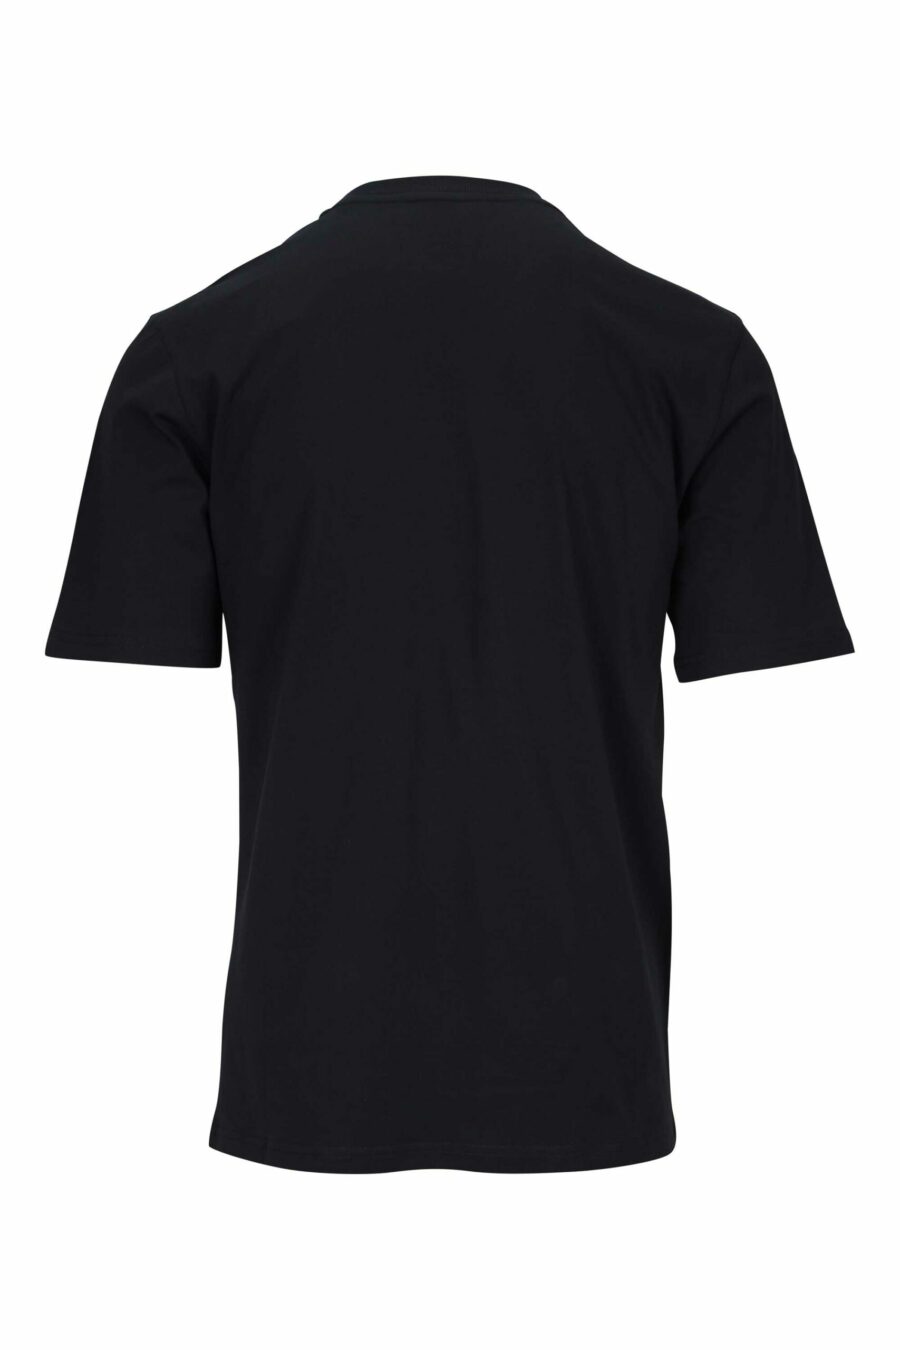 T-shirt noir avec maxilogo ours monochrome à pois - 667113455754 1 scaled